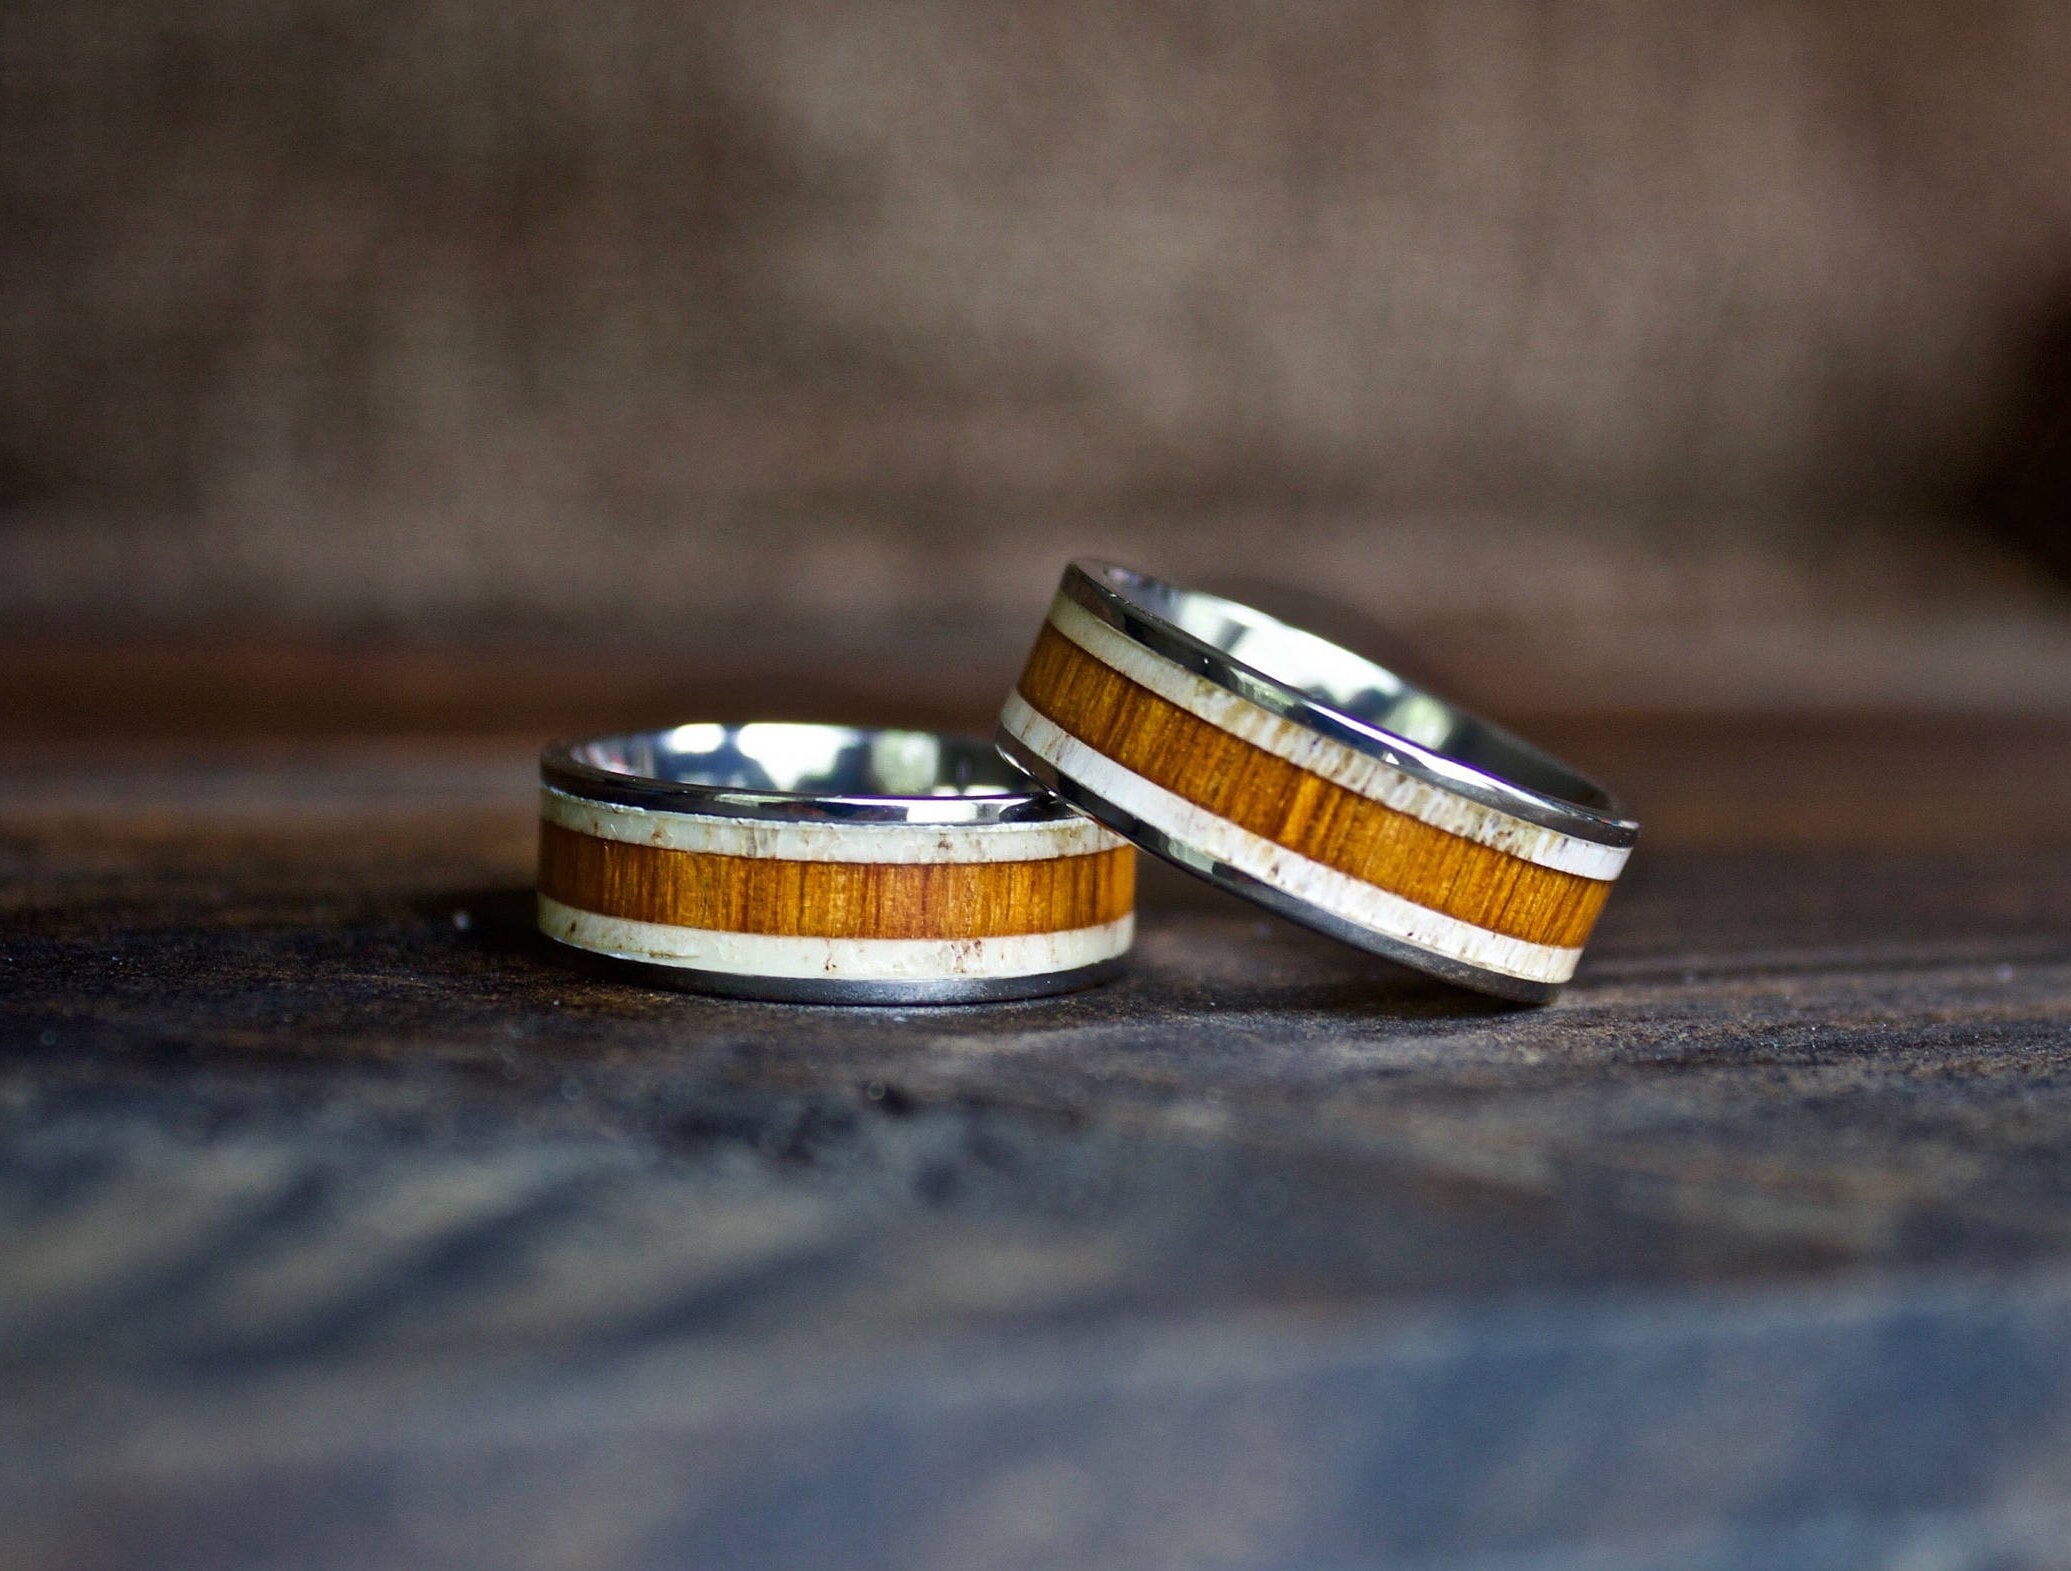 Wood Ring, Titanium Wood Antler Ring, Mens Wood Ring, Wedding Band, Koa  Wood Ring, Wooden Ring, Wood Wedding Ring, Deer Antler Ring